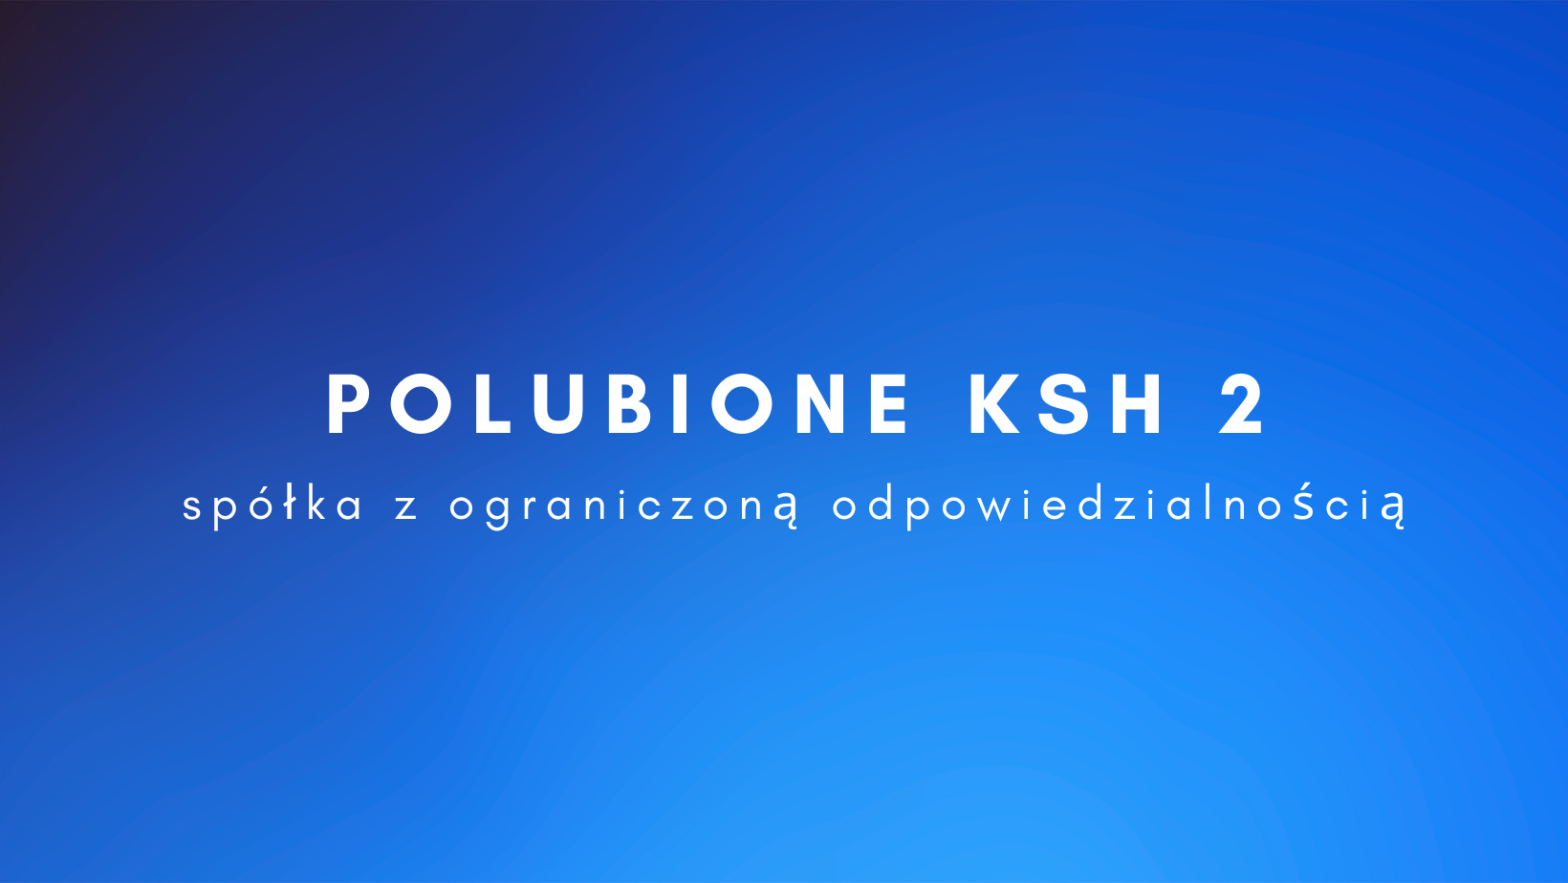 POLUBIONE KSH2 - umowa spółki z ograniczoną odpowiedzialnością